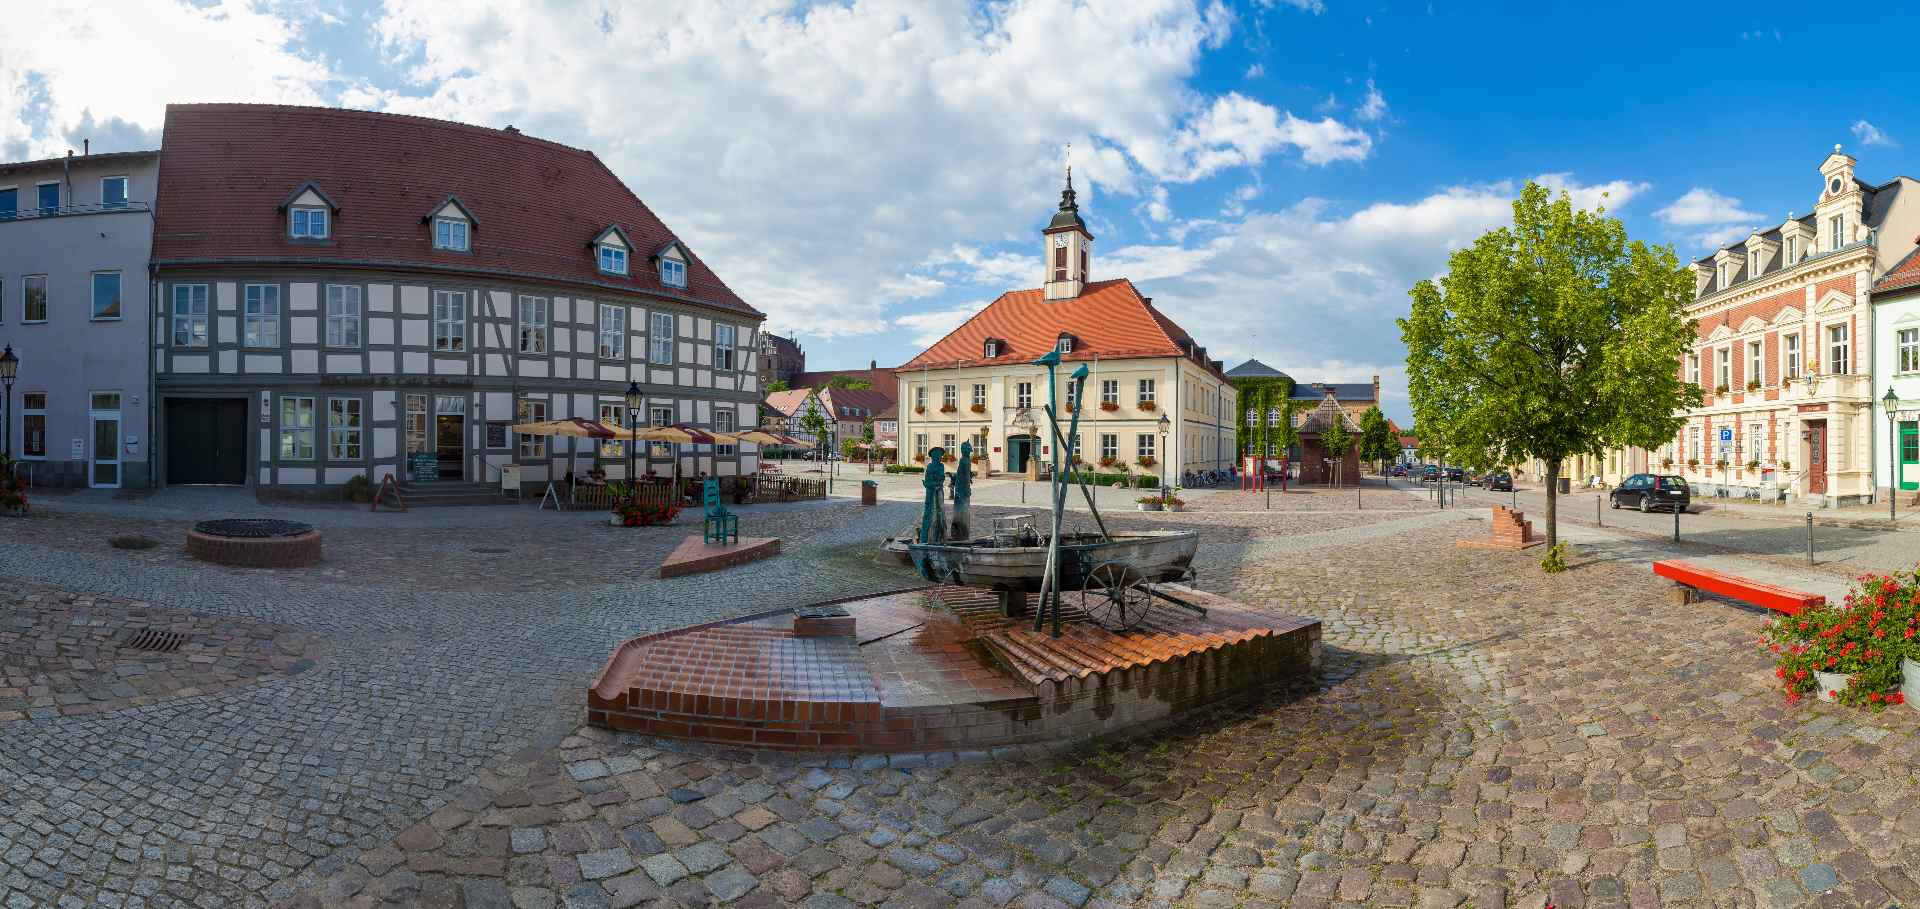 Marktplatz und Rathaus in Angermünde